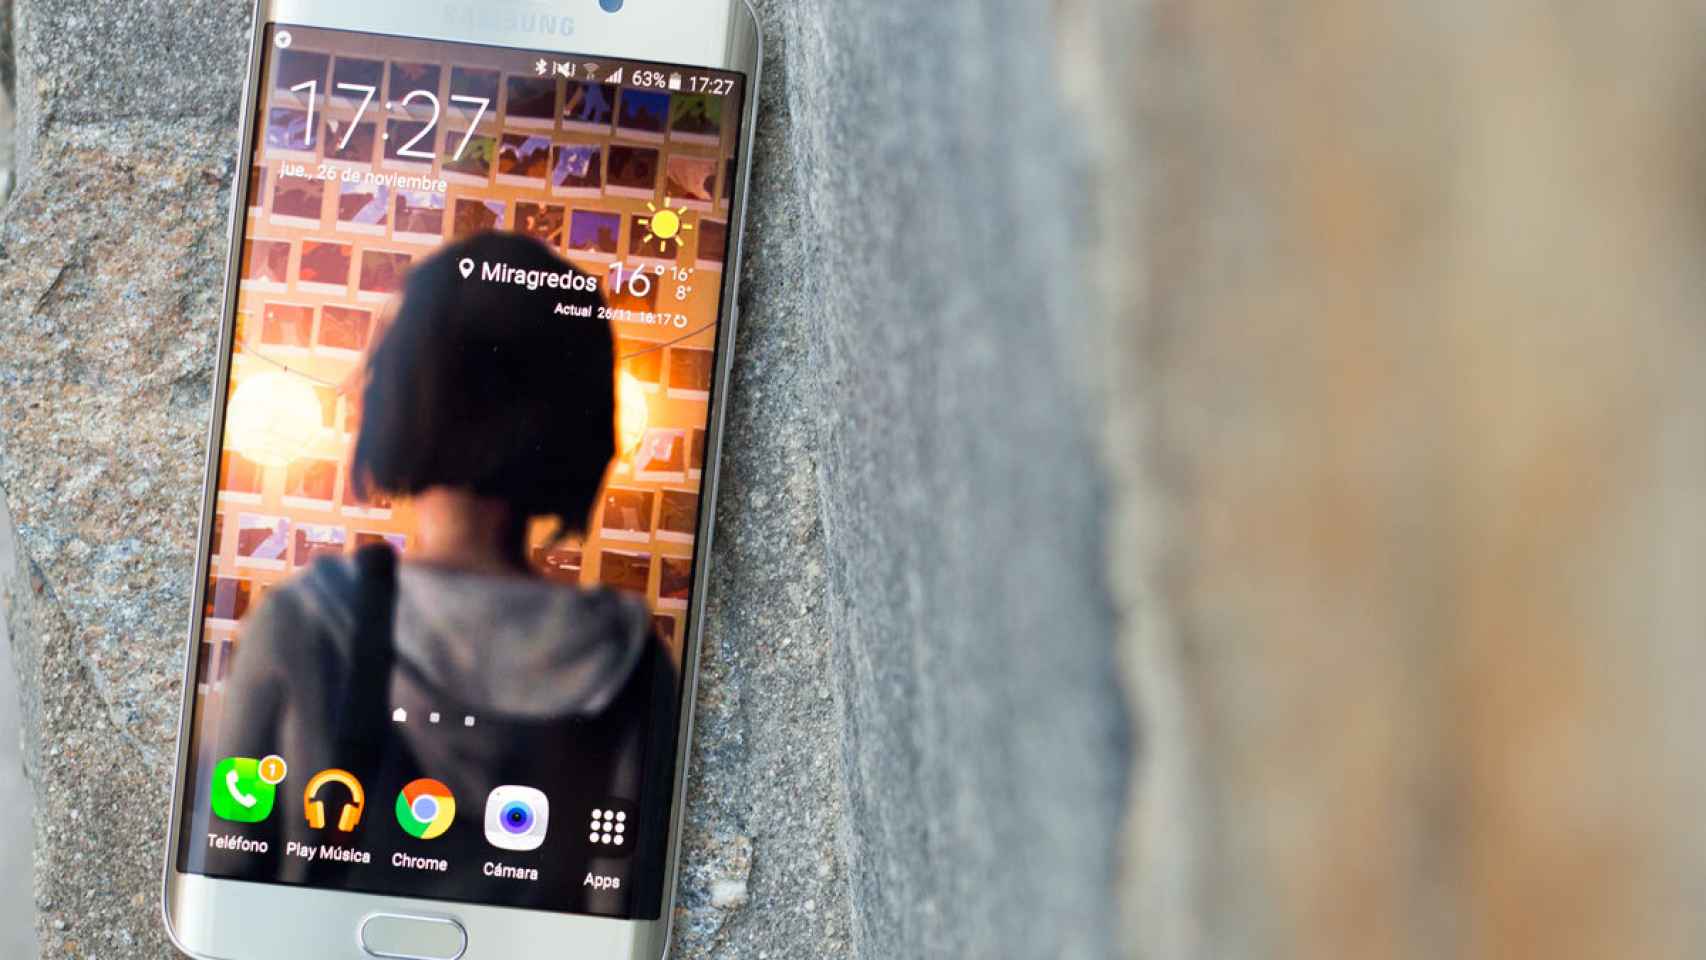 Samsung Galaxy S6 Edge +, análisis y experiencia de uso